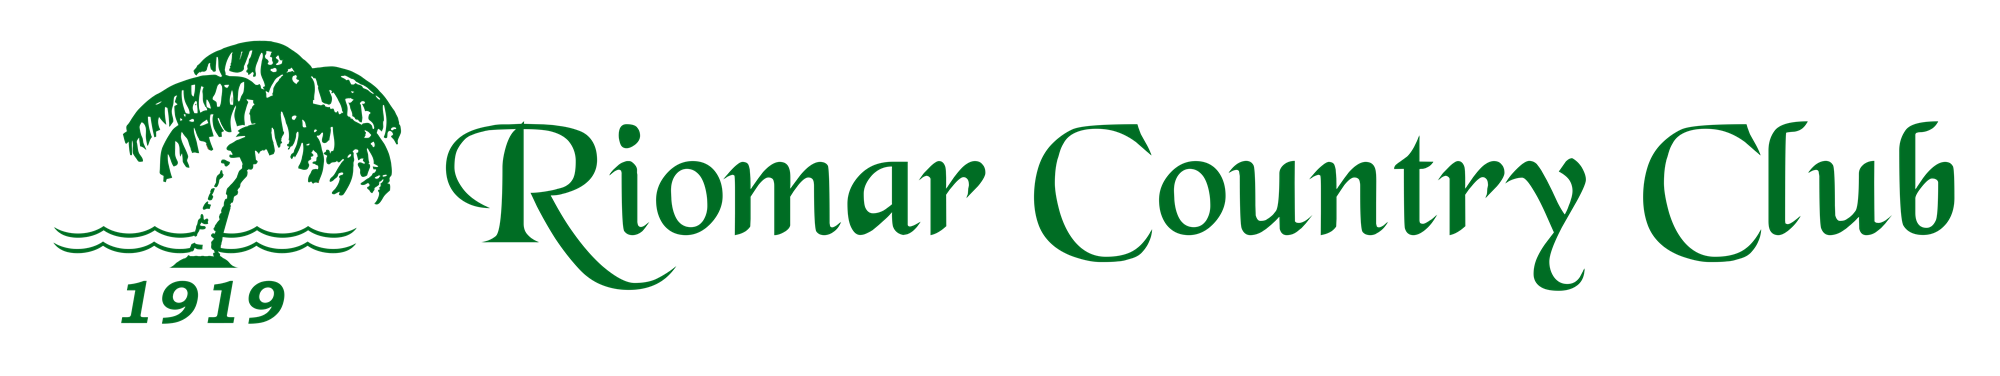 Riomar Golf Course Logo